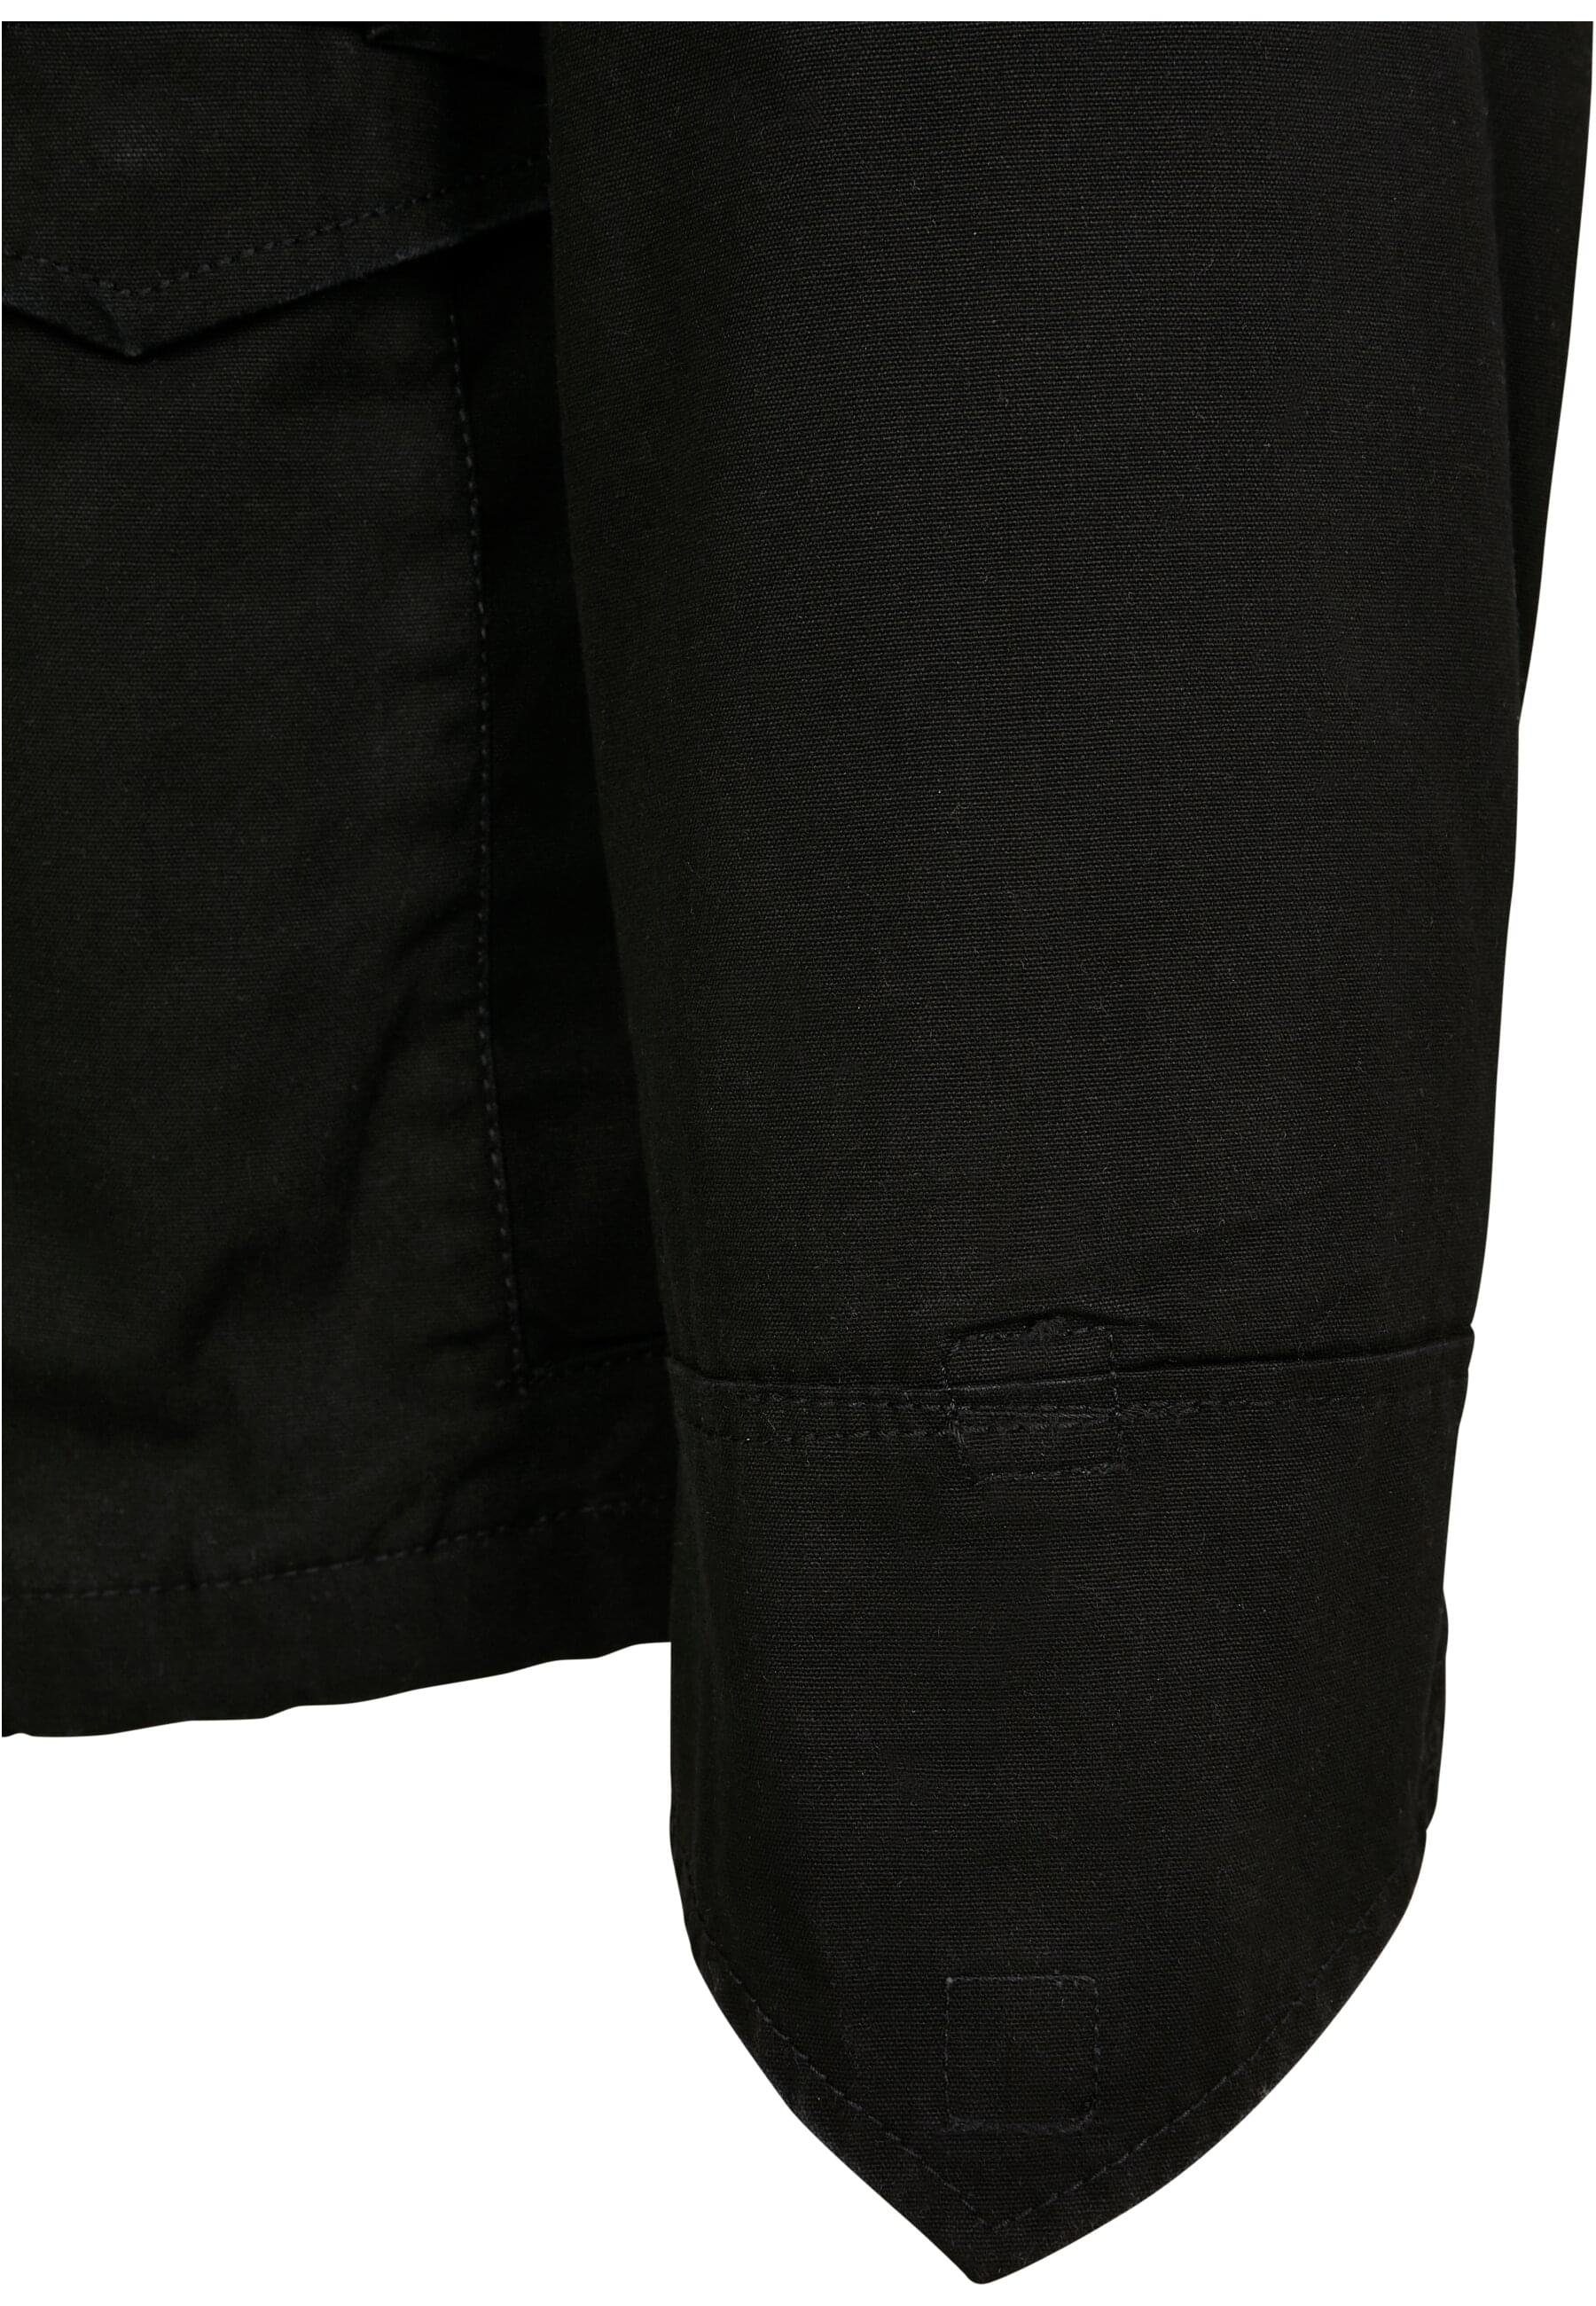 Brandit Wintermantel Herren M-65 Giant black Jacket